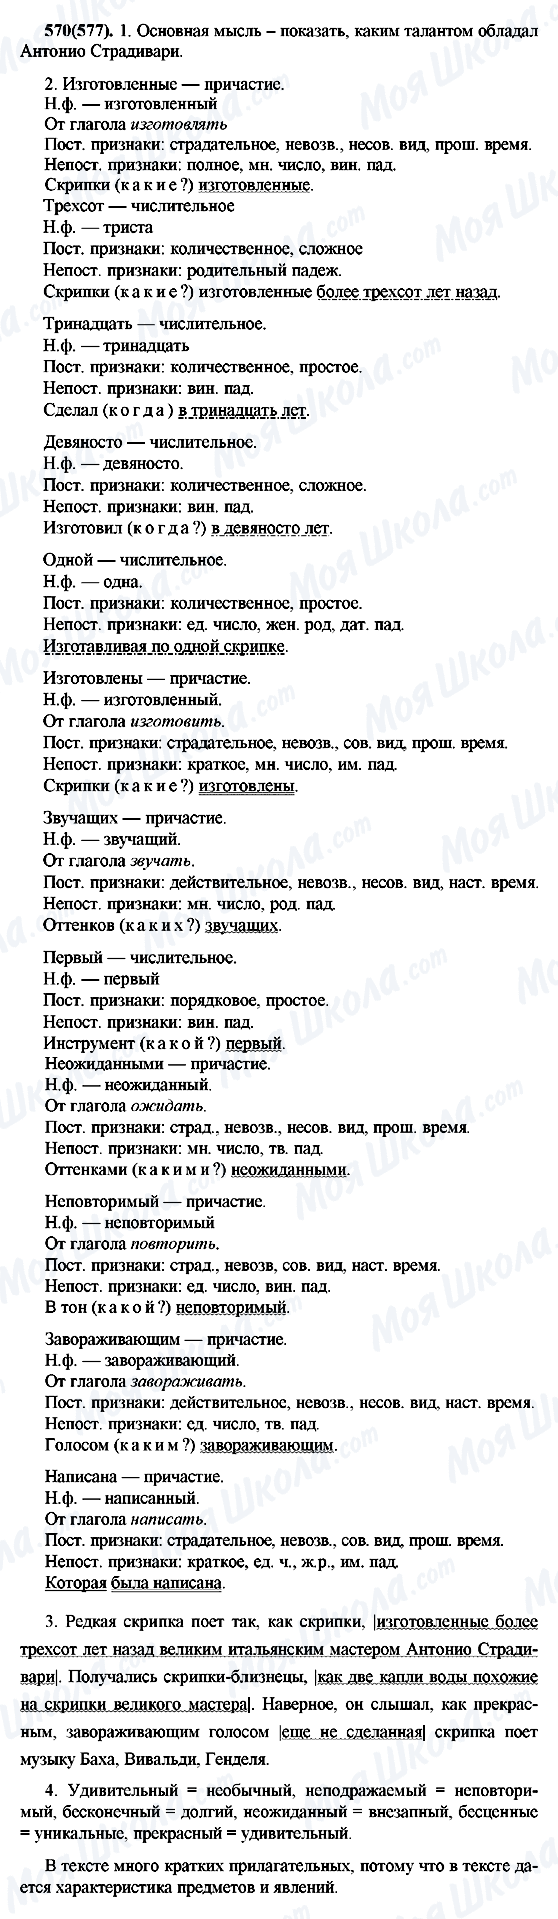 ГДЗ Русский язык 7 класс страница 570(577)